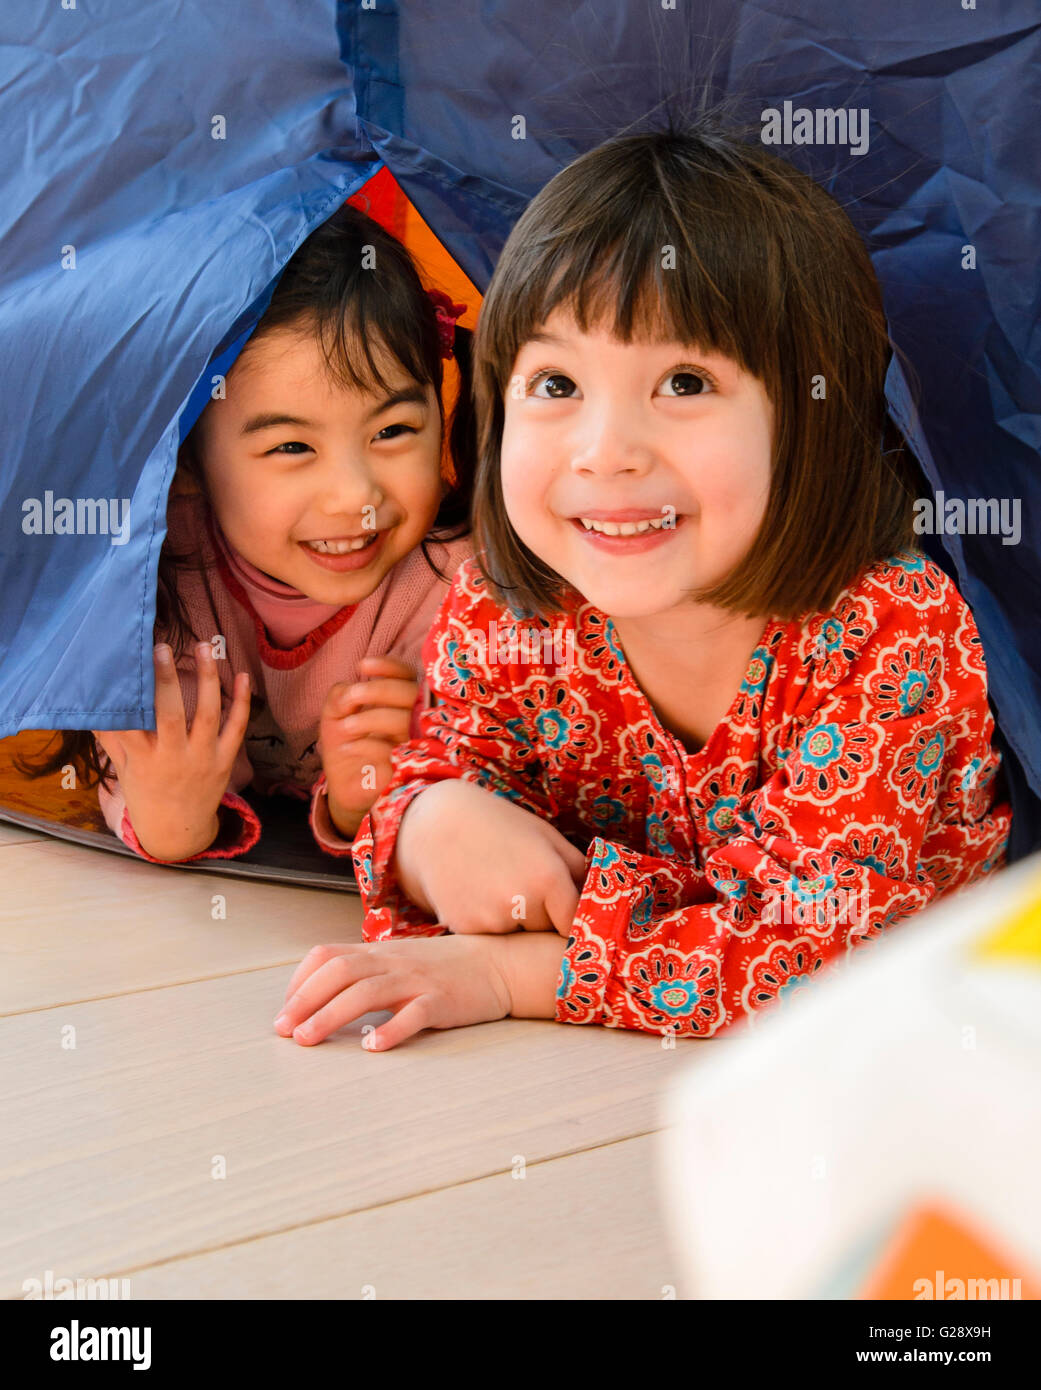 Kinder spielen in einem Kinder-Zelt Stockfoto